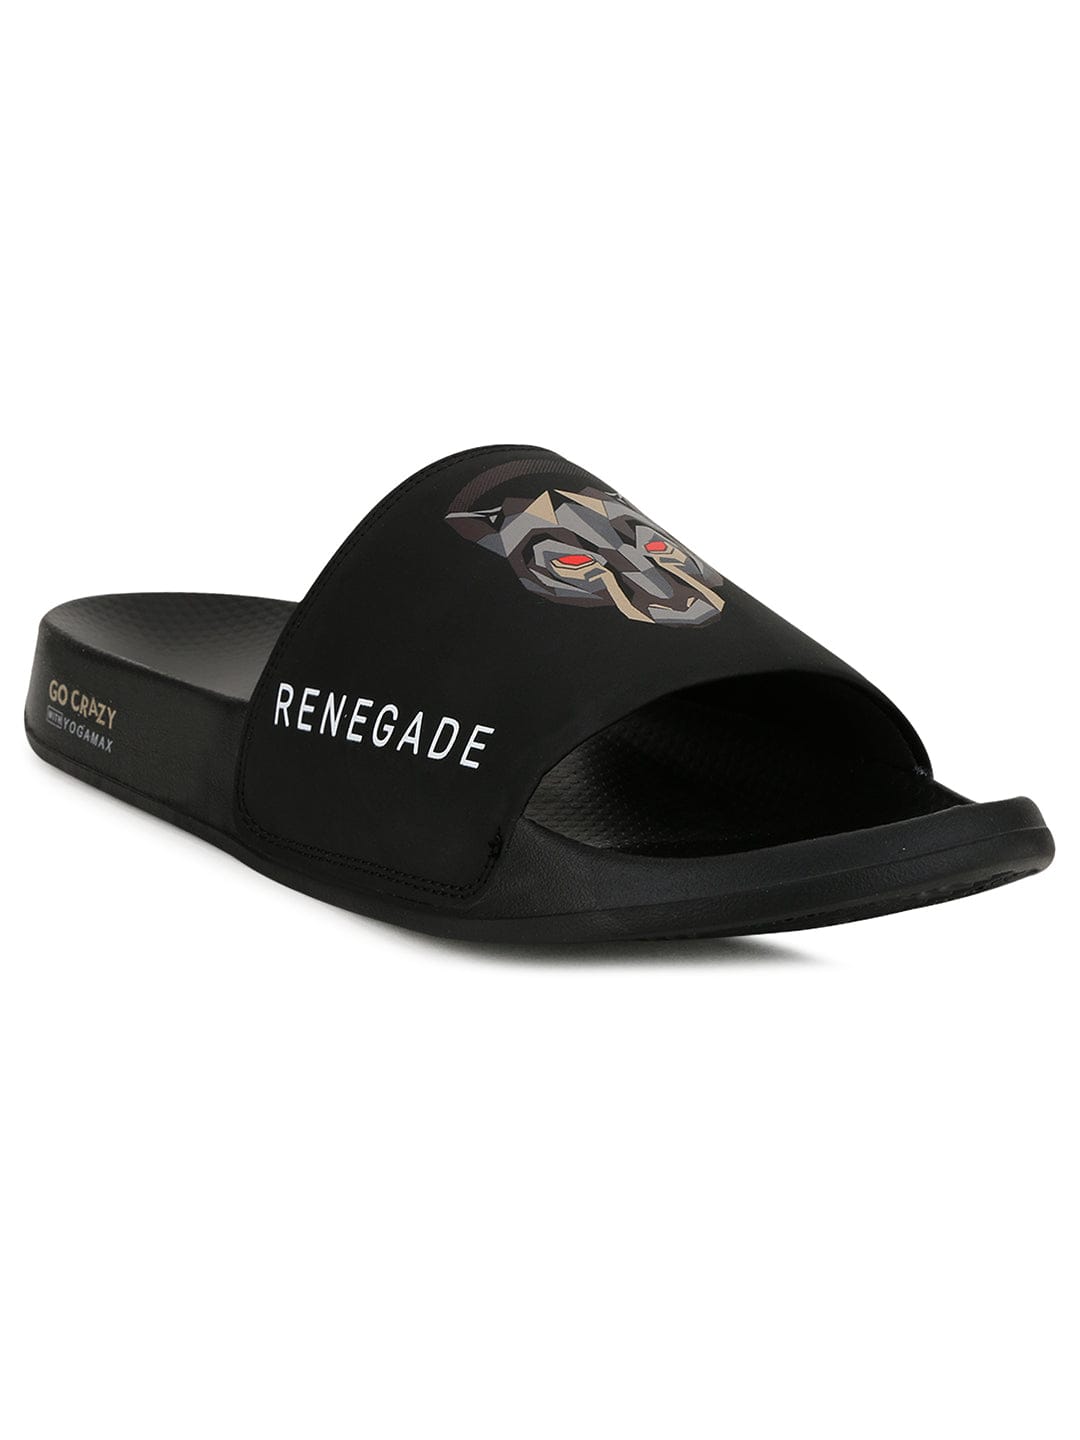 Buy RENEGADE-SL Men's Sliders online | Campus Shoes